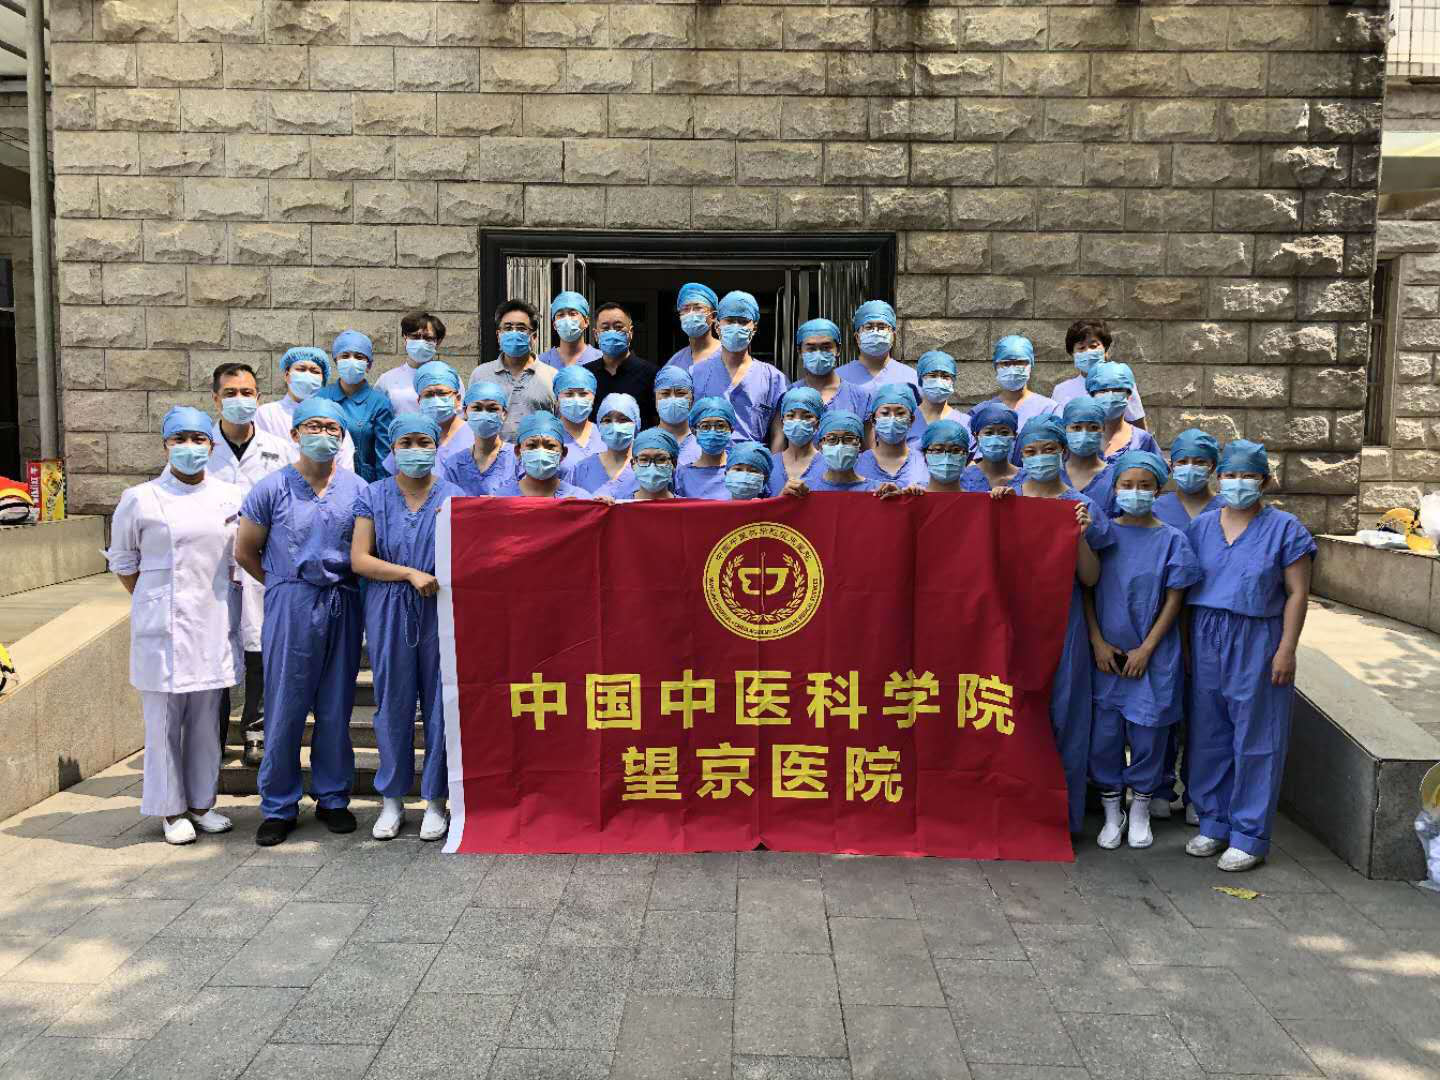 包含中国中医科学院望京医院过来人教你哪里有号!的词条